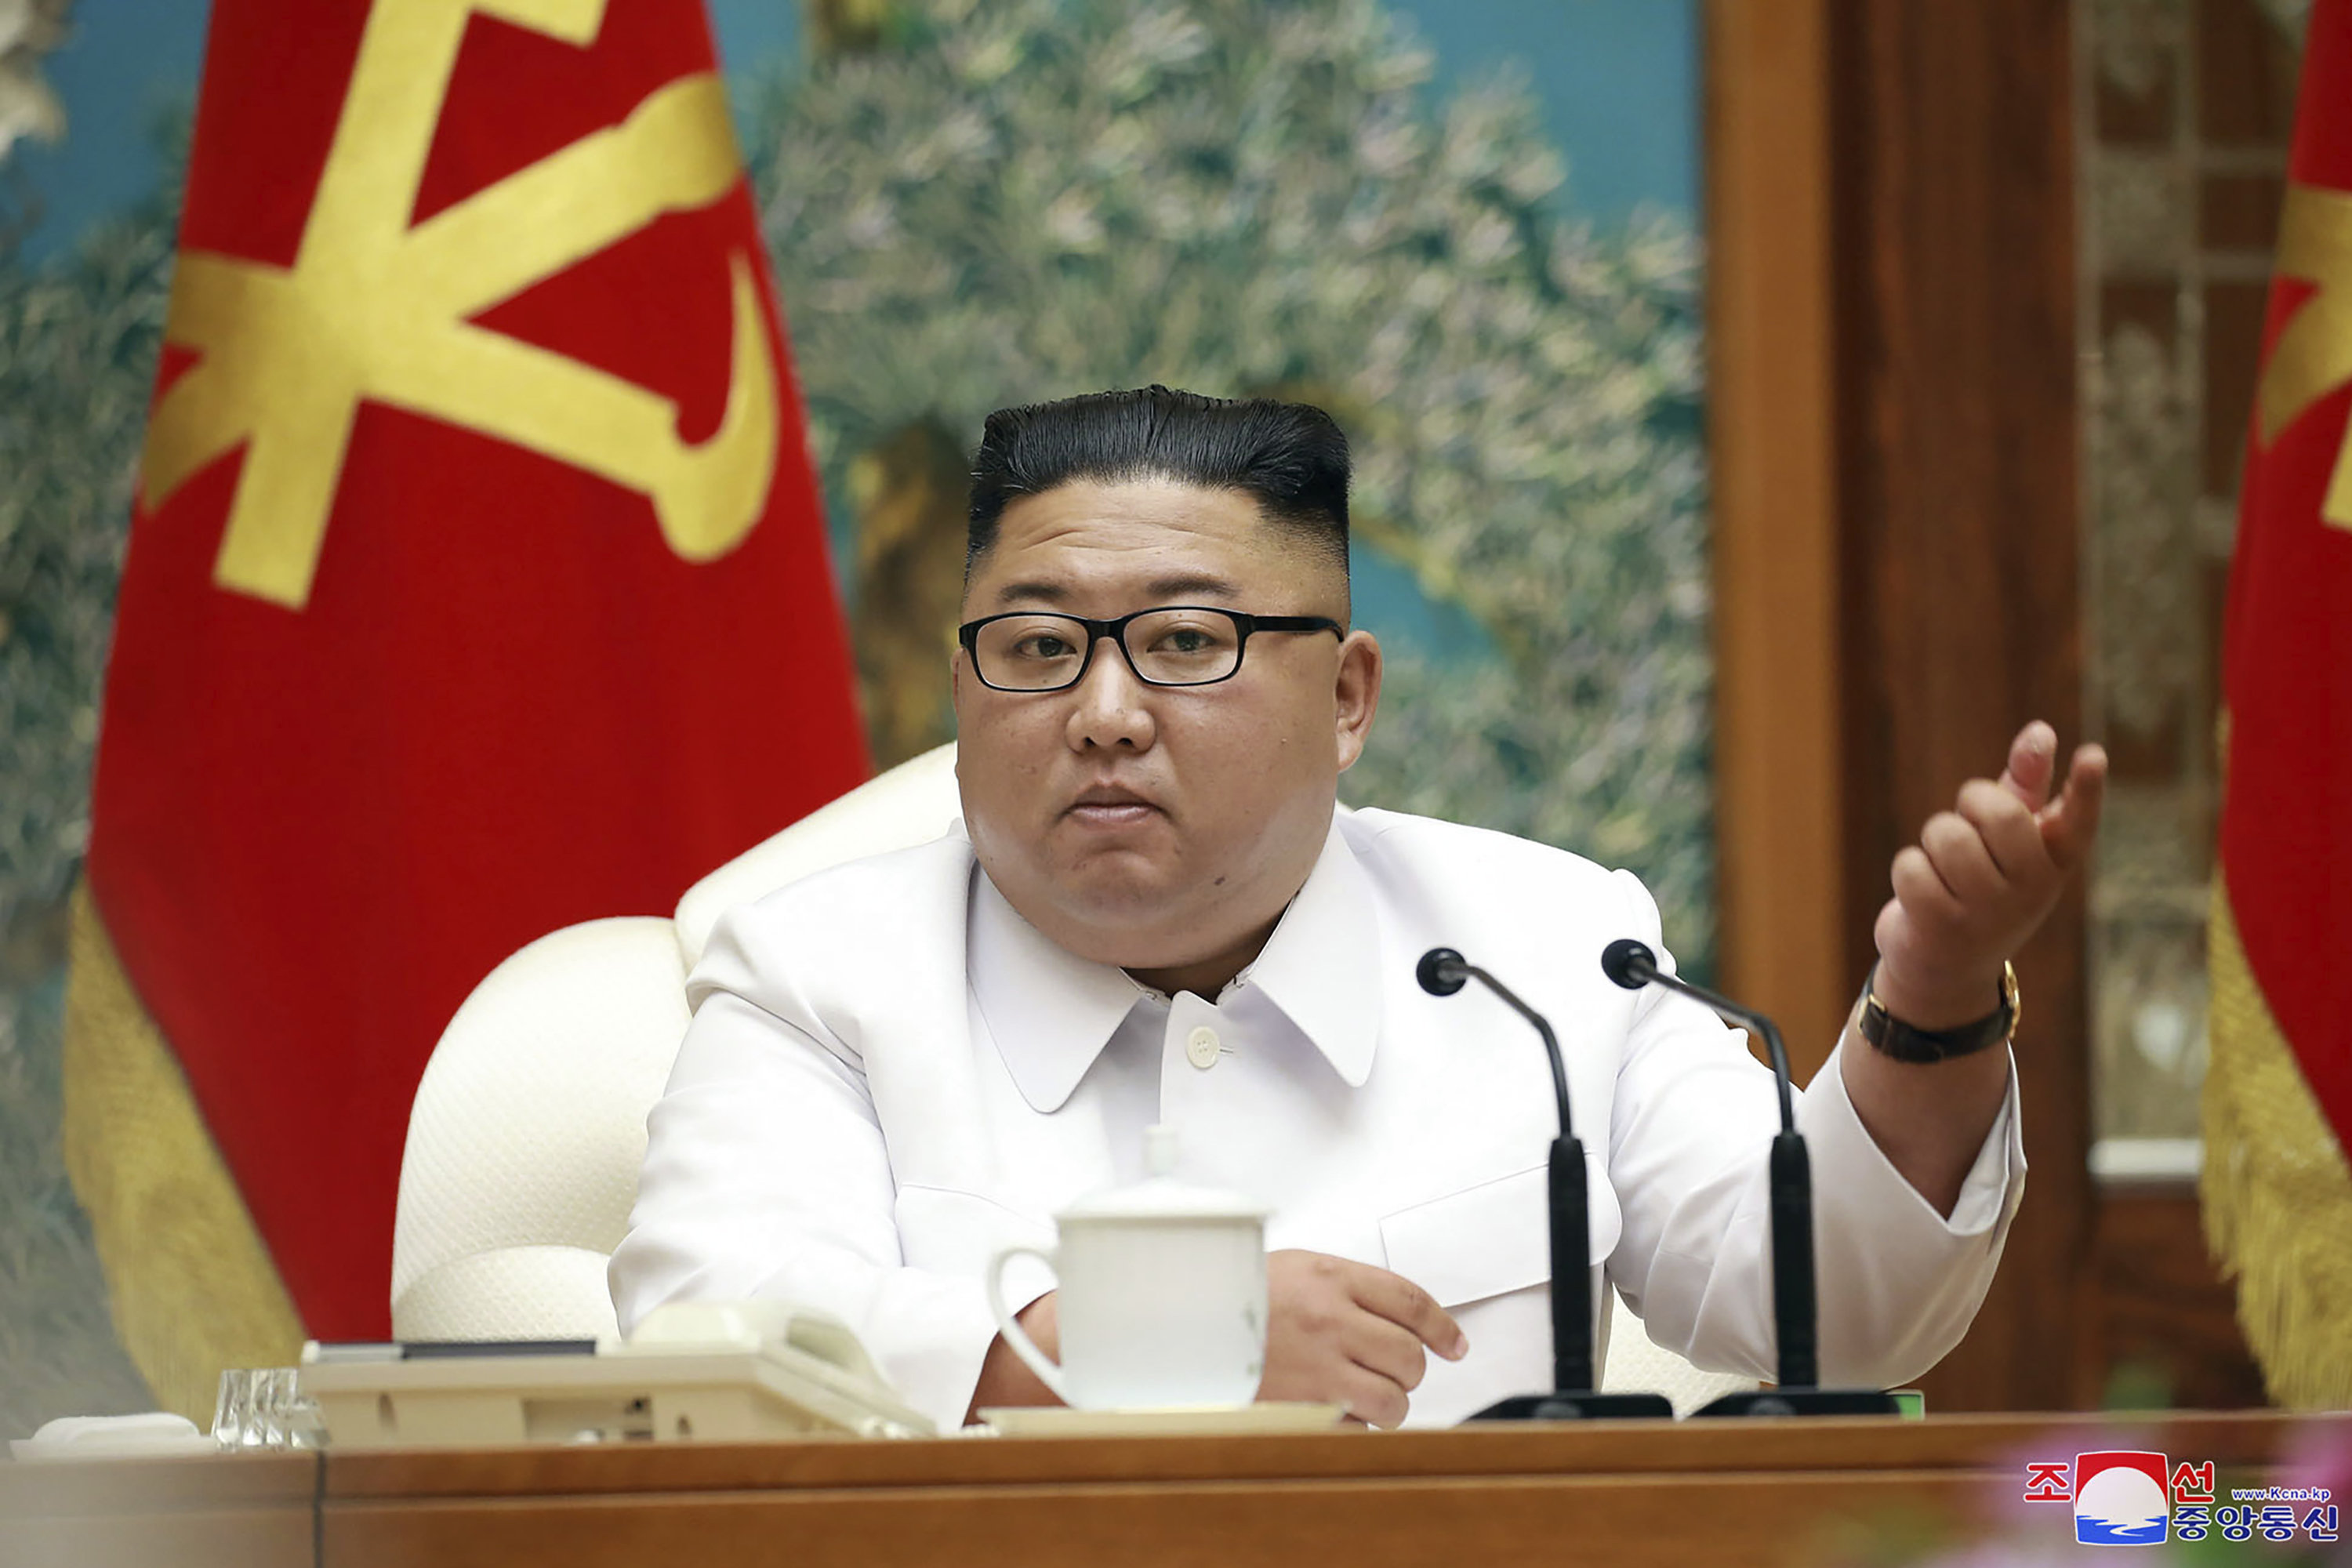 Северна Корея ще ускори развитието на ядрения си арсенал. Това заяви